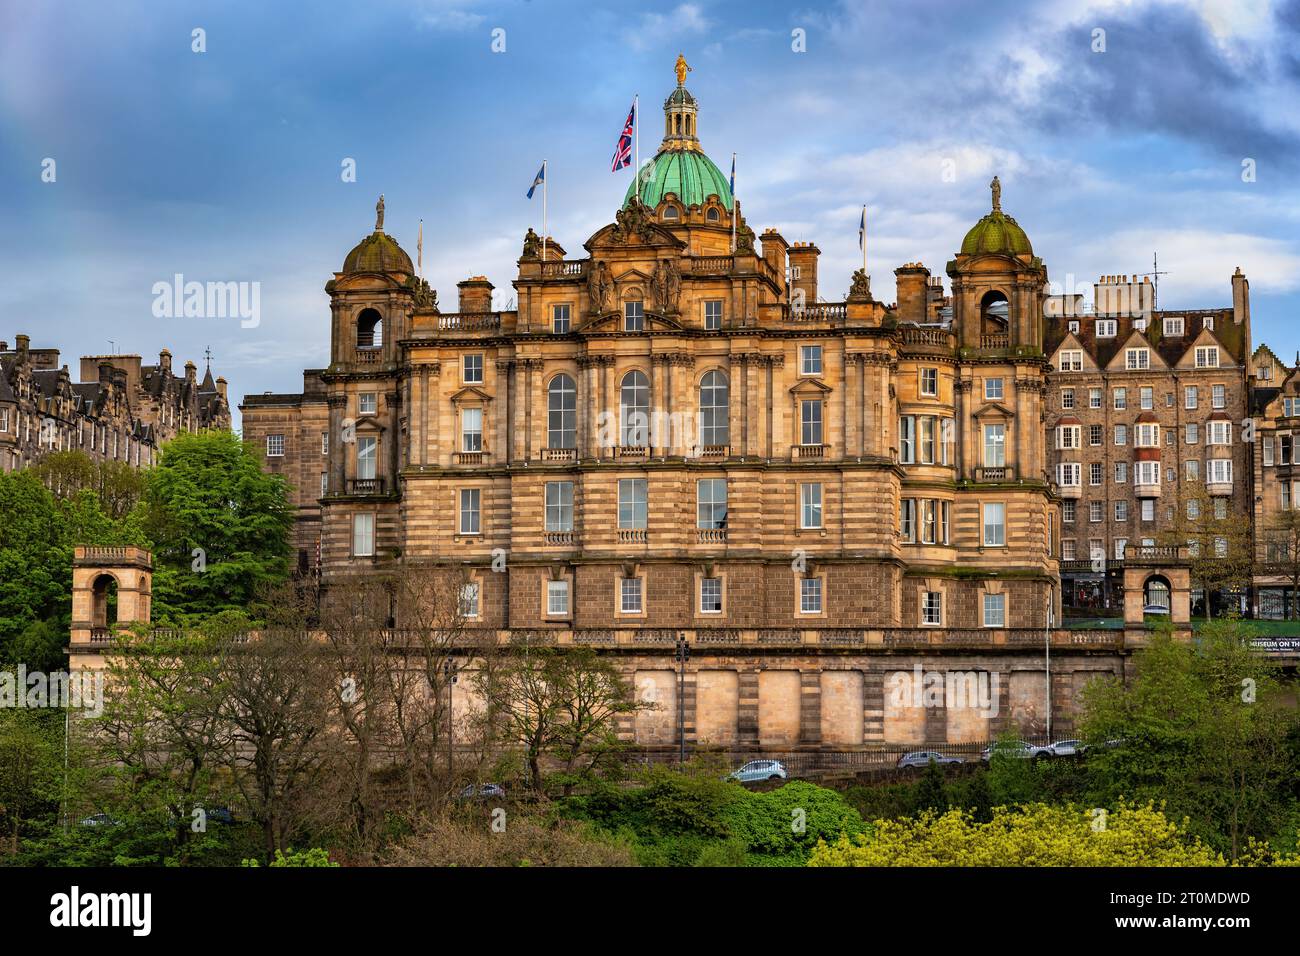 Das Museum on the Mound in Edinburgh, Schottland, Großbritannien. Historisches Hauptbüro der Bank of Scotland, Barockgebäude aus dem 19. Jahrhundert mit Kuppel. Stockfoto